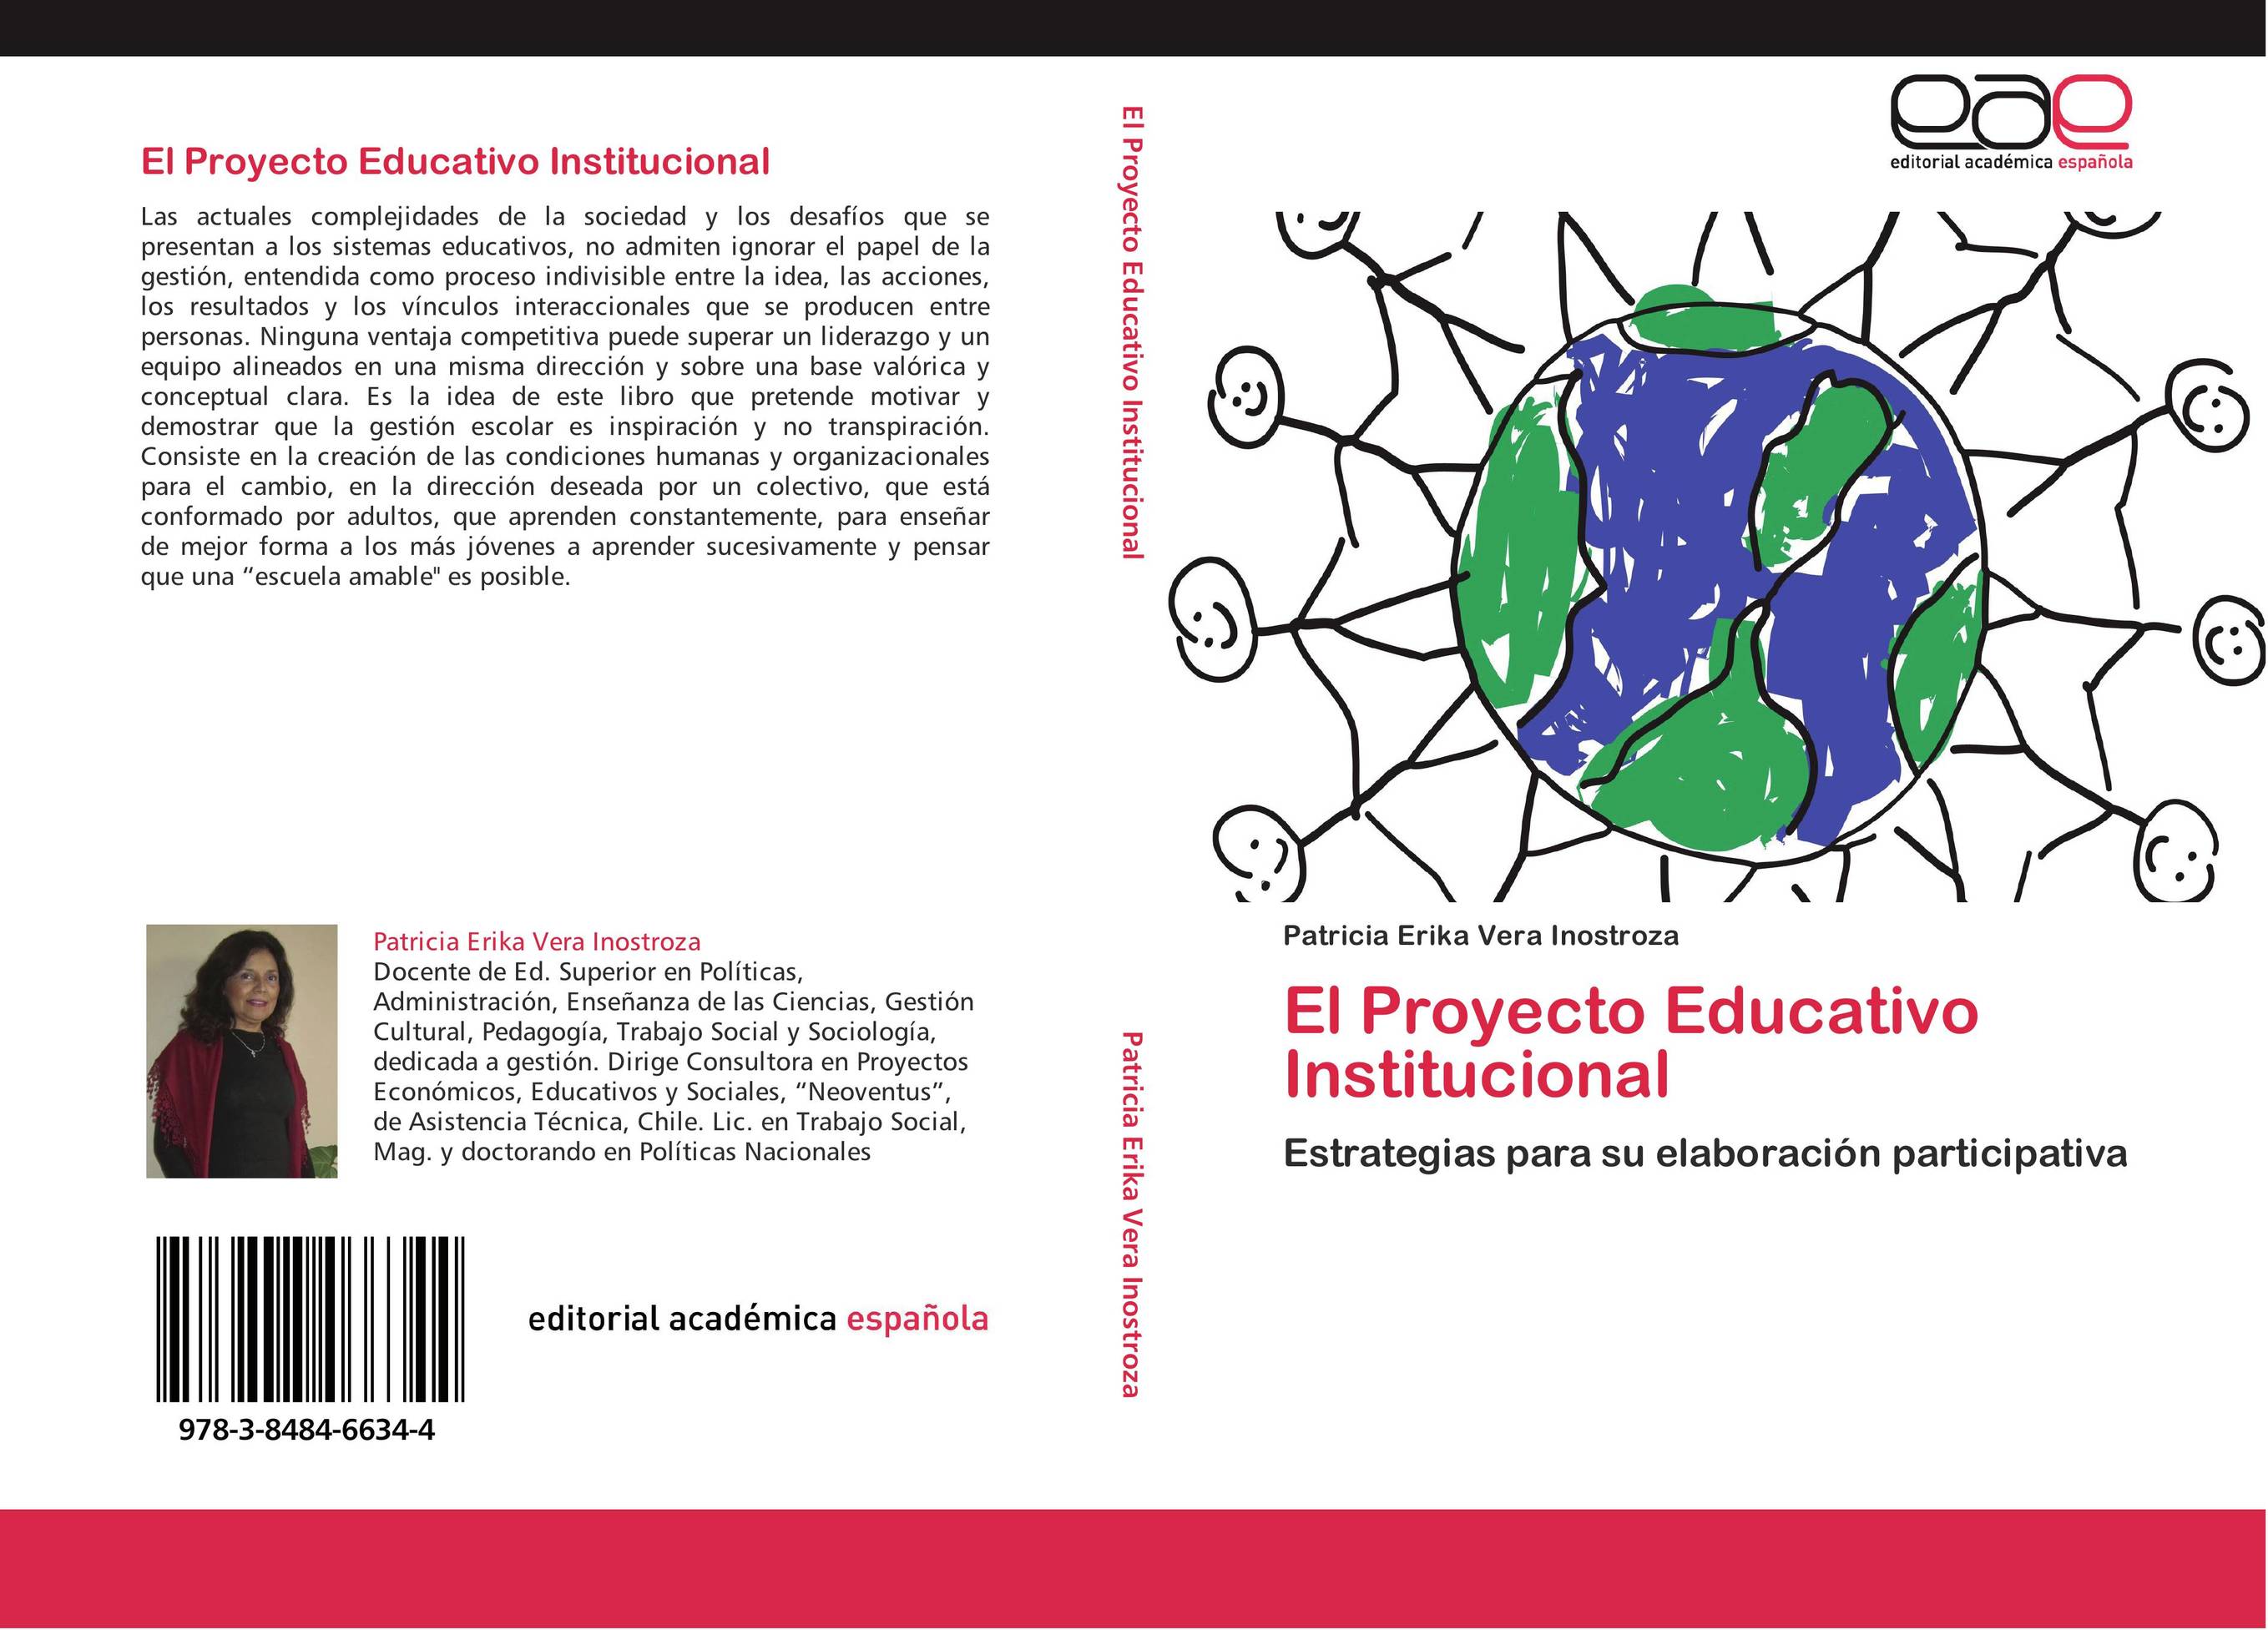 El Proyecto Educativo Institucional